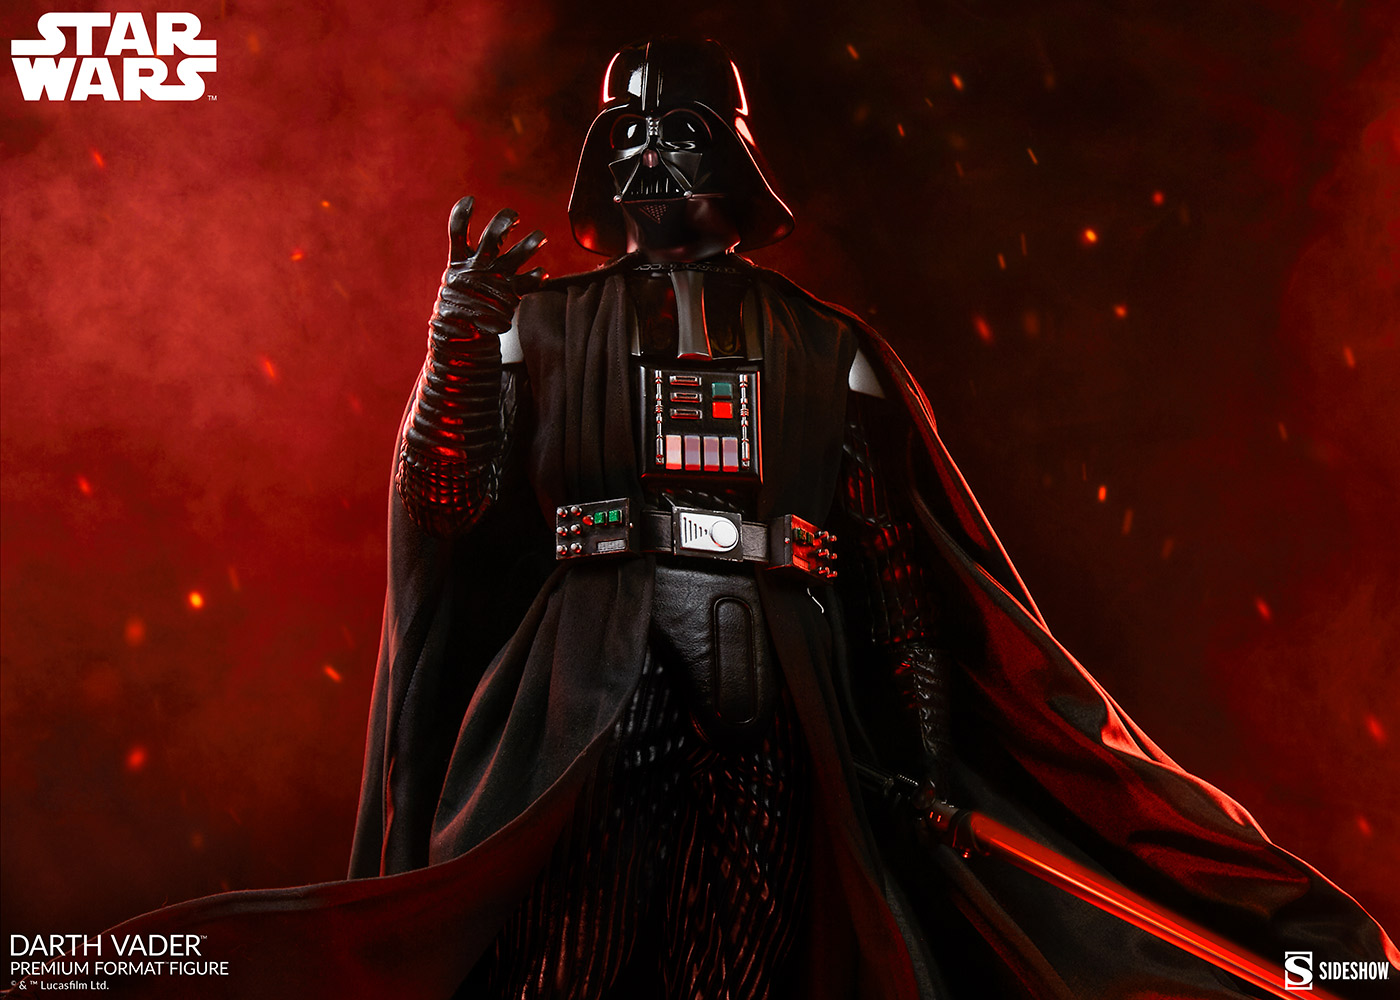 Darth Vader Images